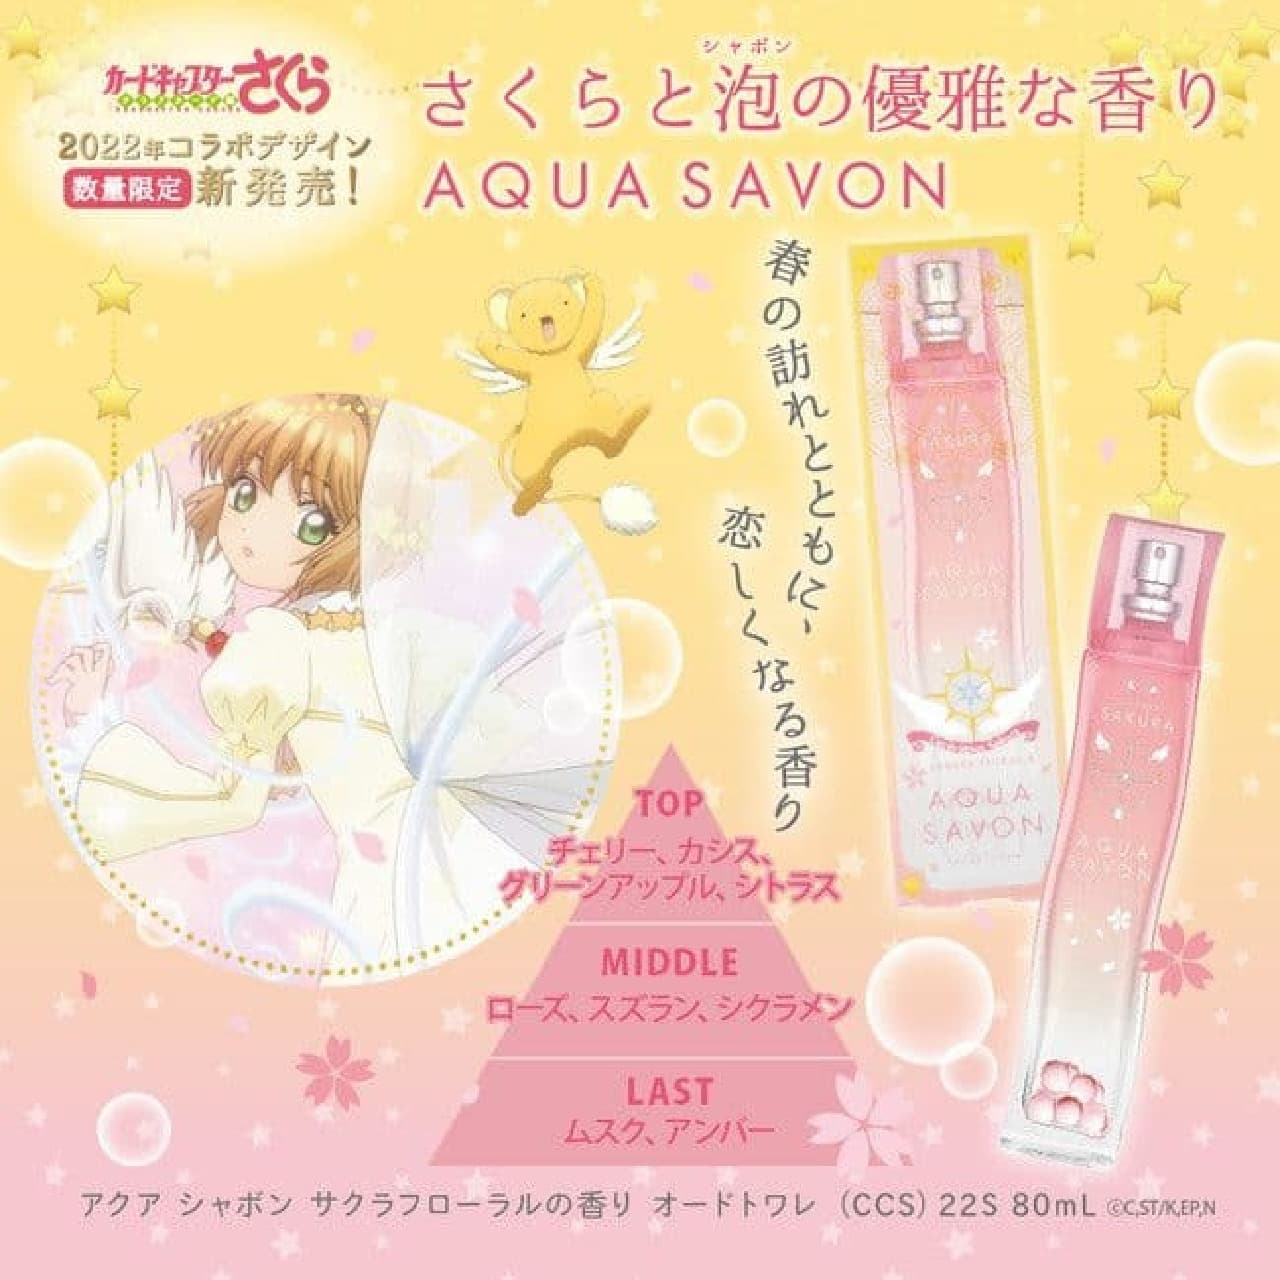 Aqua Chavon Sakura Floral Fragrance Eau de Toilette" limited edition design Vol. 3